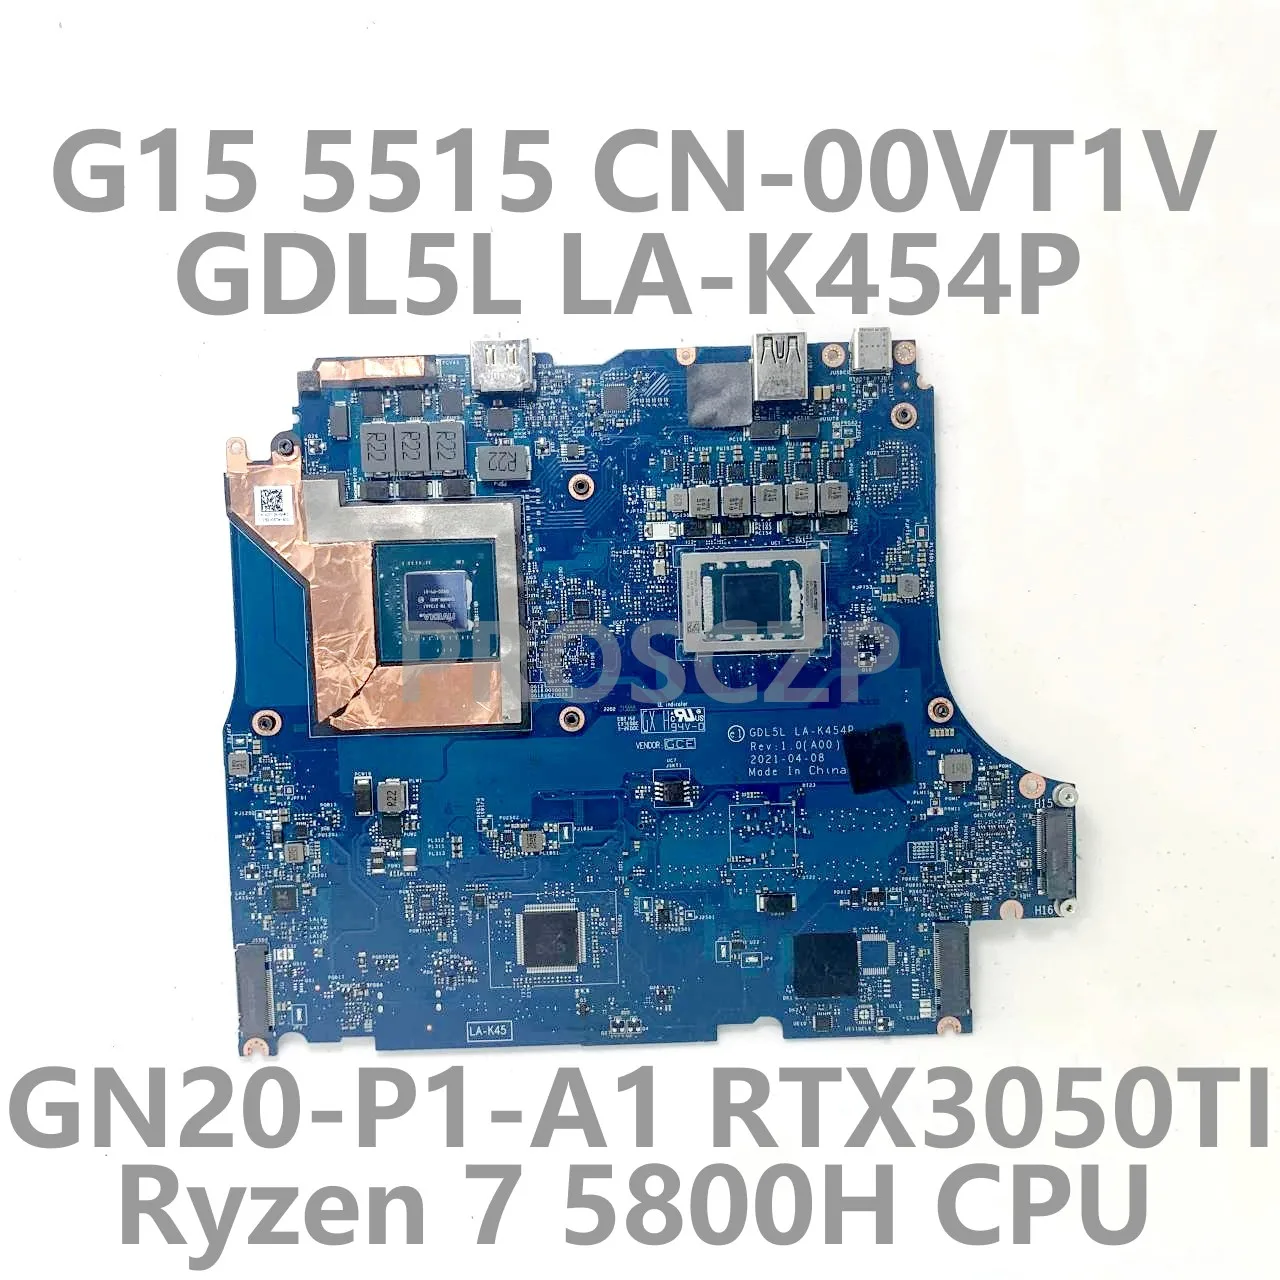 

CN-00VT1V 00VT1V 0VT1V For DELL G15 5515 Laptop Motherboard LA-K454P With Ryzen 7 5800H CPU GN20-P1-A1 RTX3050TI 100%Tested Good